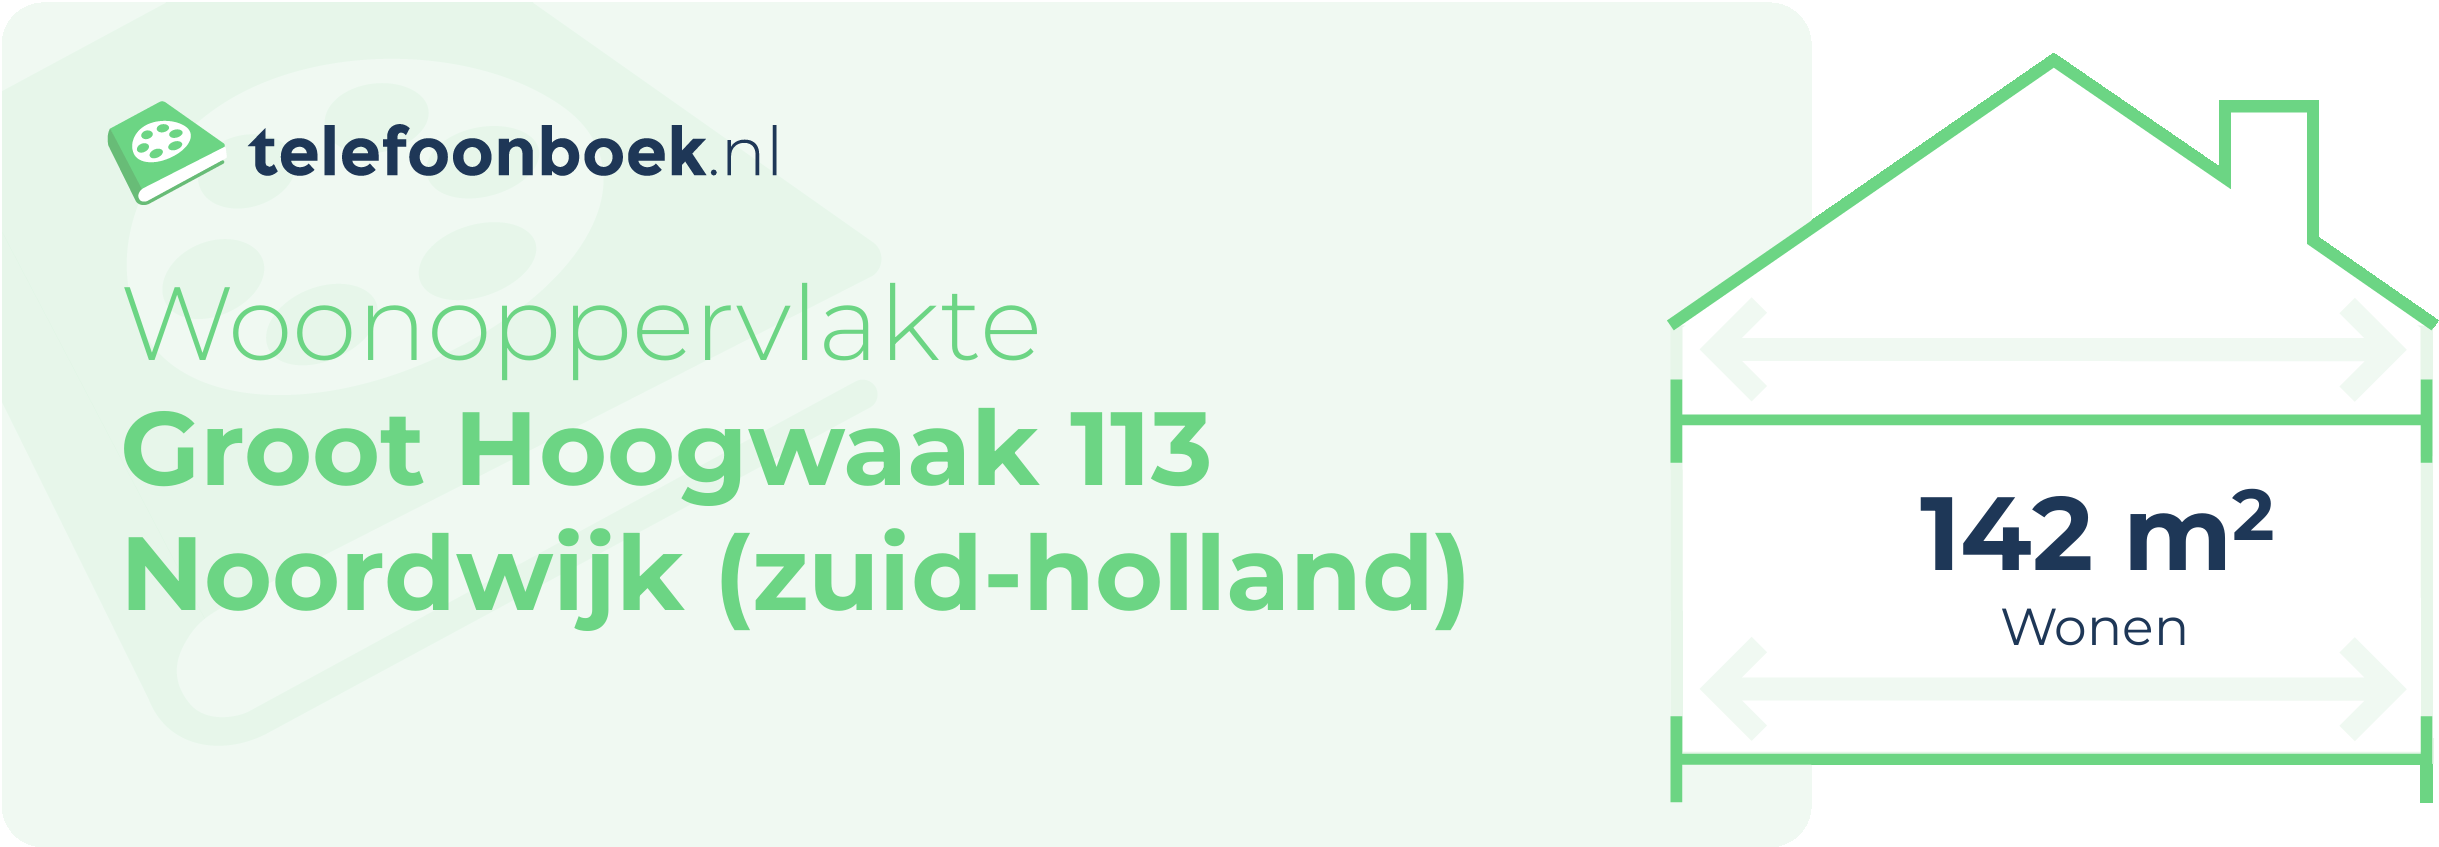 Woonoppervlakte Groot Hoogwaak 113 Noordwijk (Zuid-Holland)